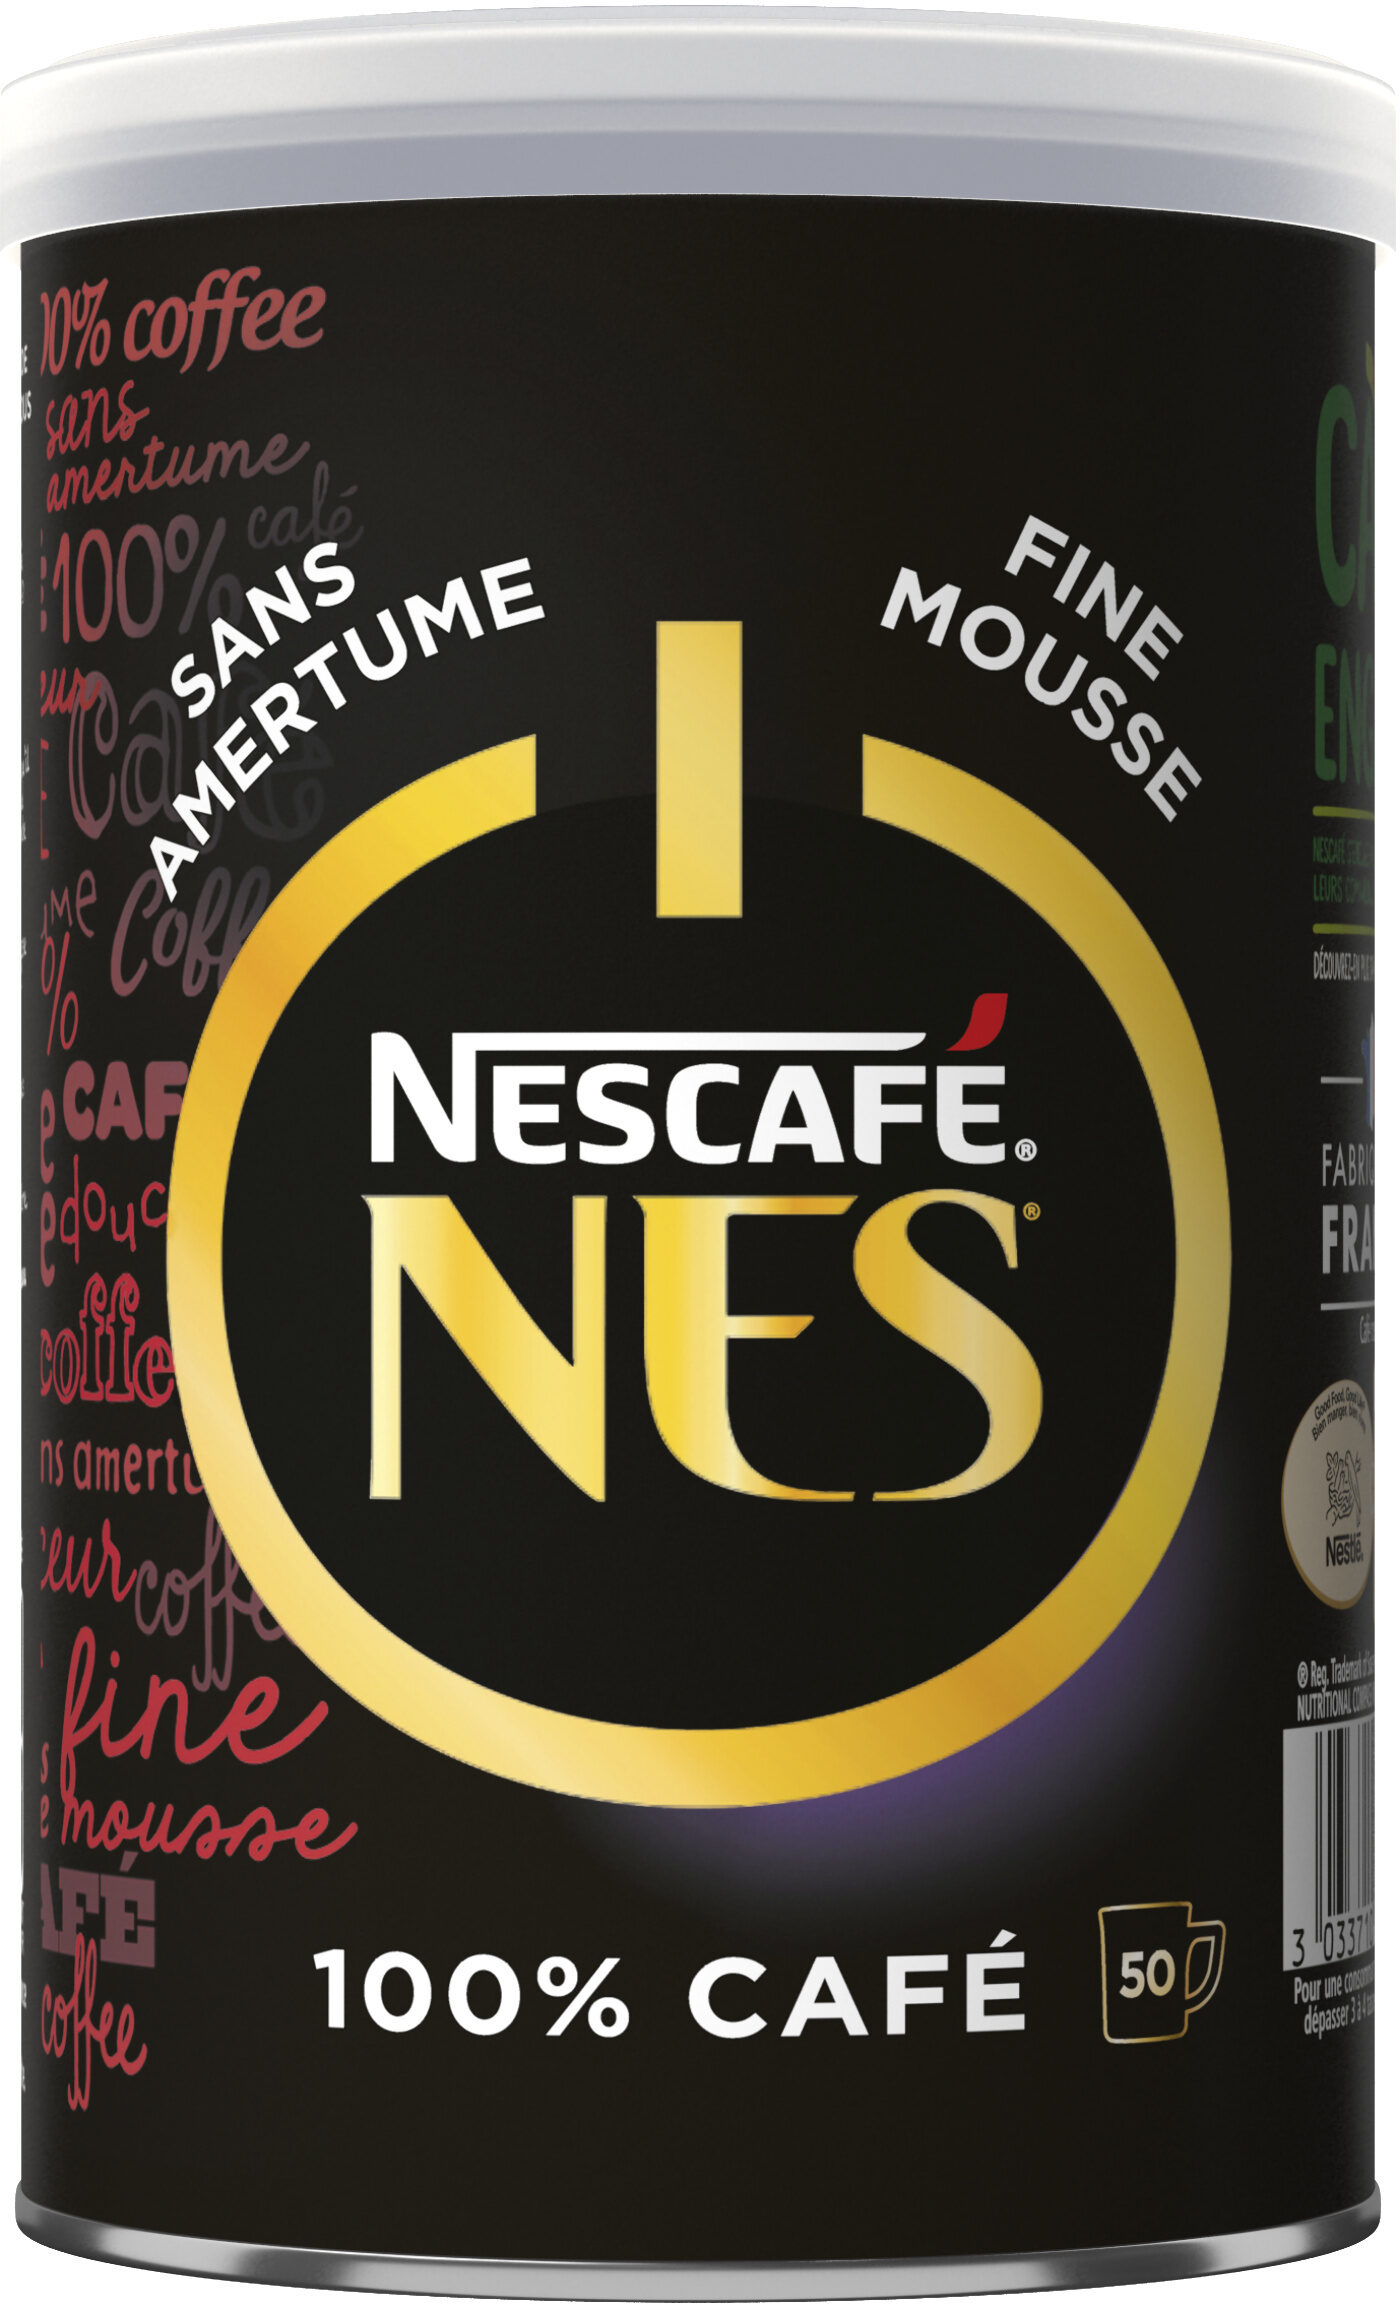 NESCAFÉ NES, Café Soluble, - Product - fr